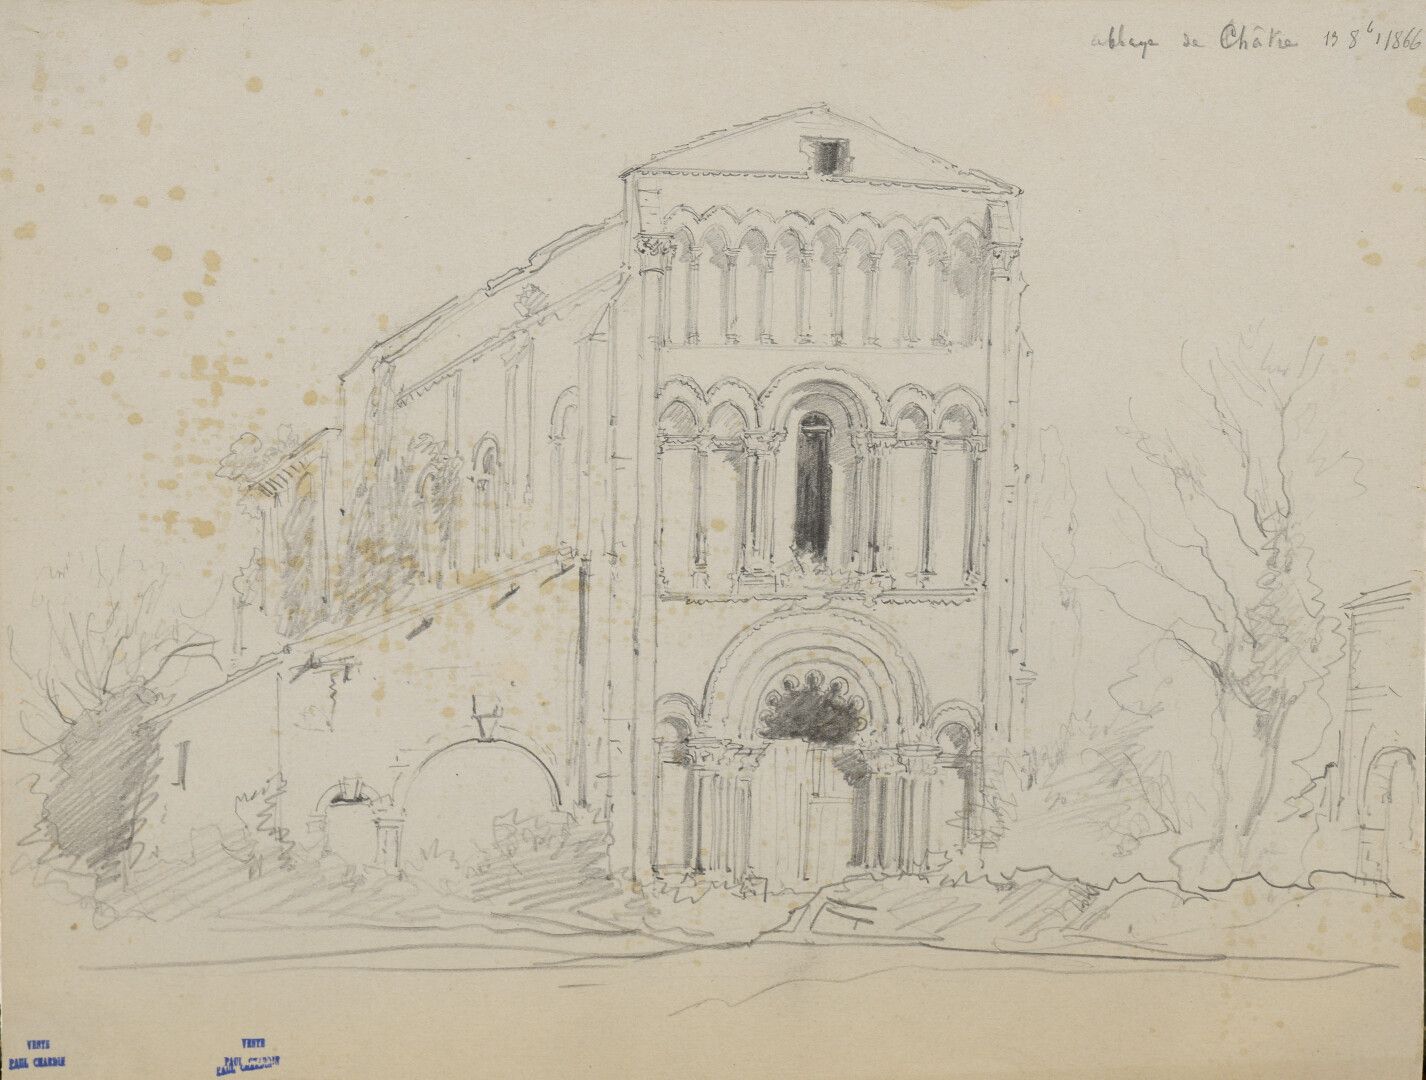 Null Paul CHARDIN (1833-1918)

Lote de ocho dibujos (viaje a Charente)

Lápiz.

&hellip;